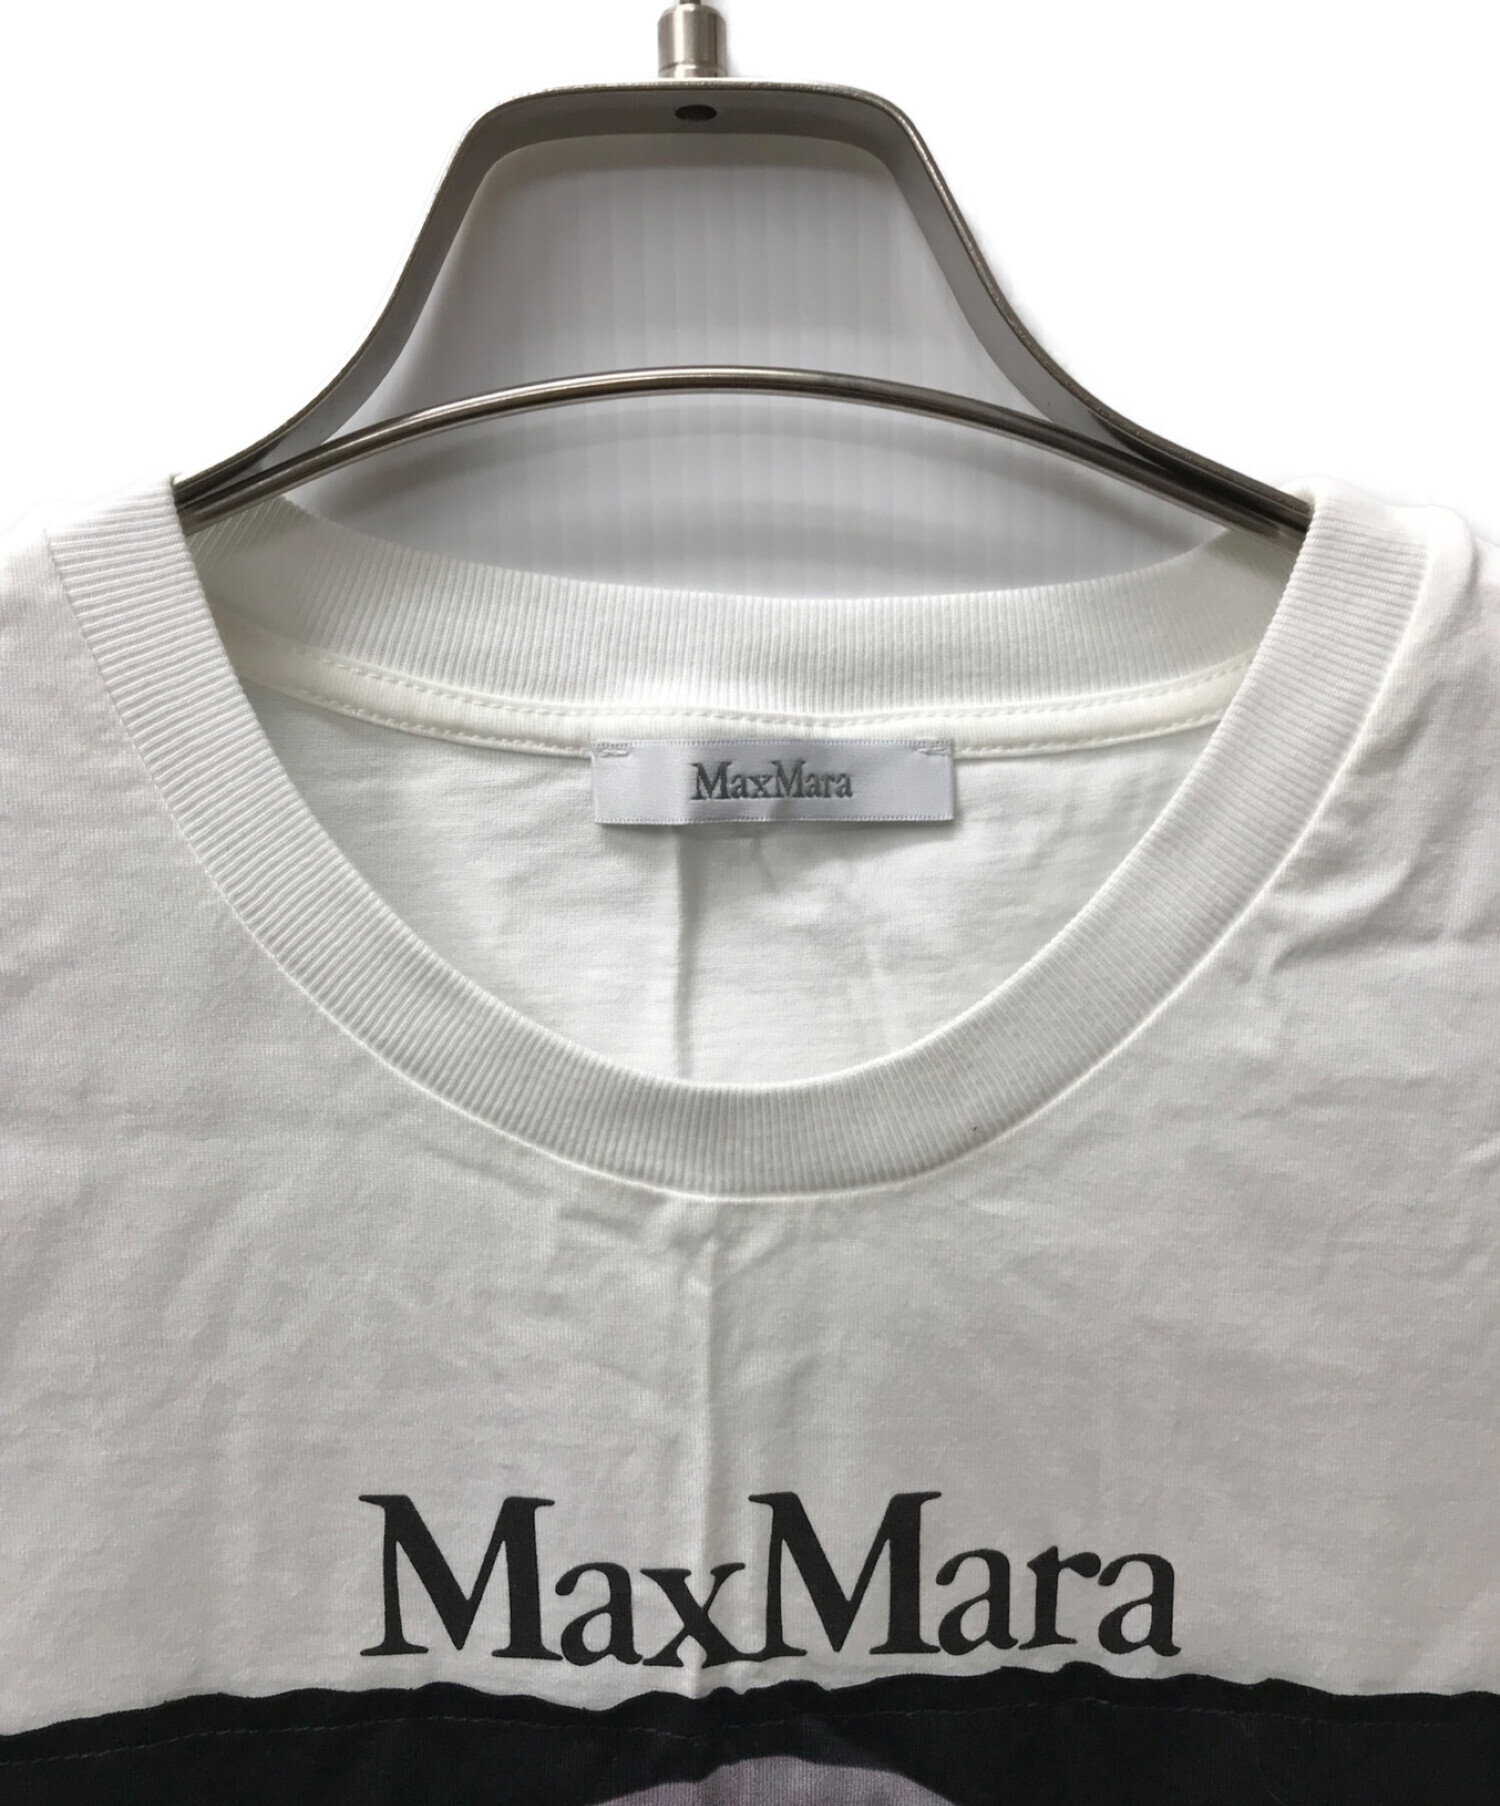 MaxMara (マックスマーラ) 「DOGSTAR」ドッグフォトプリントTシャツ ホワイト サイズ:Ｍ